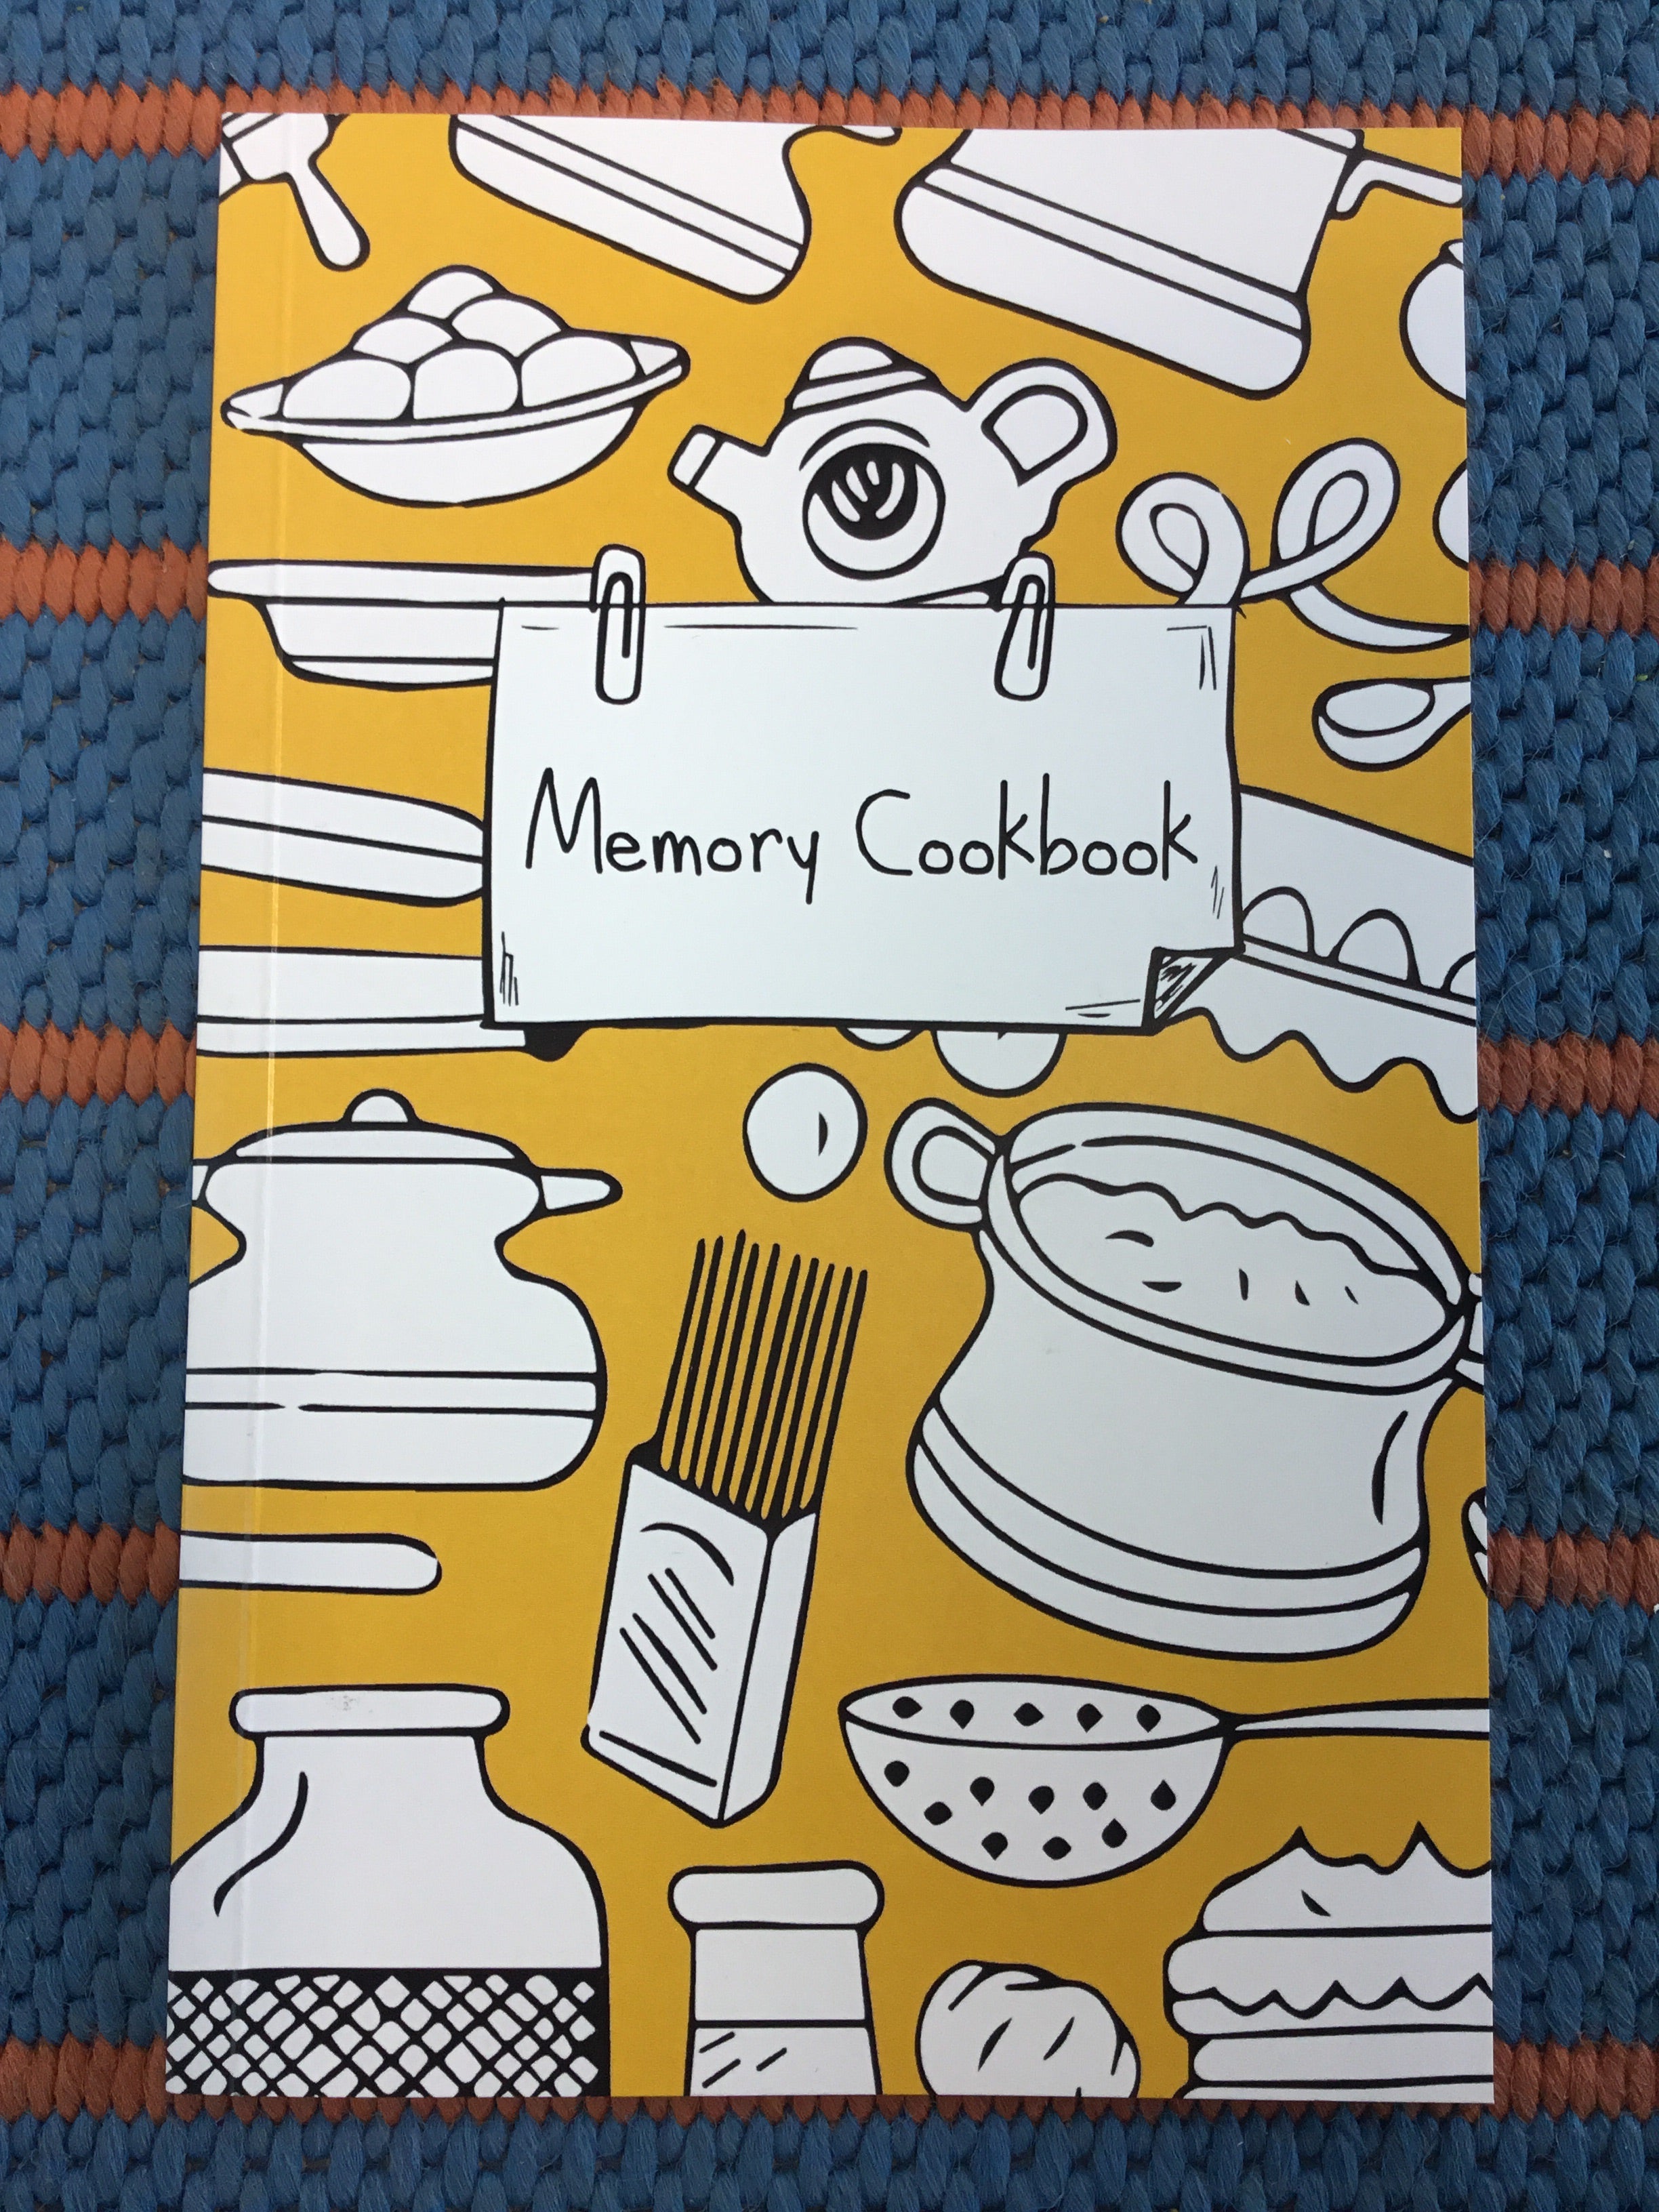 Memory Cookbook